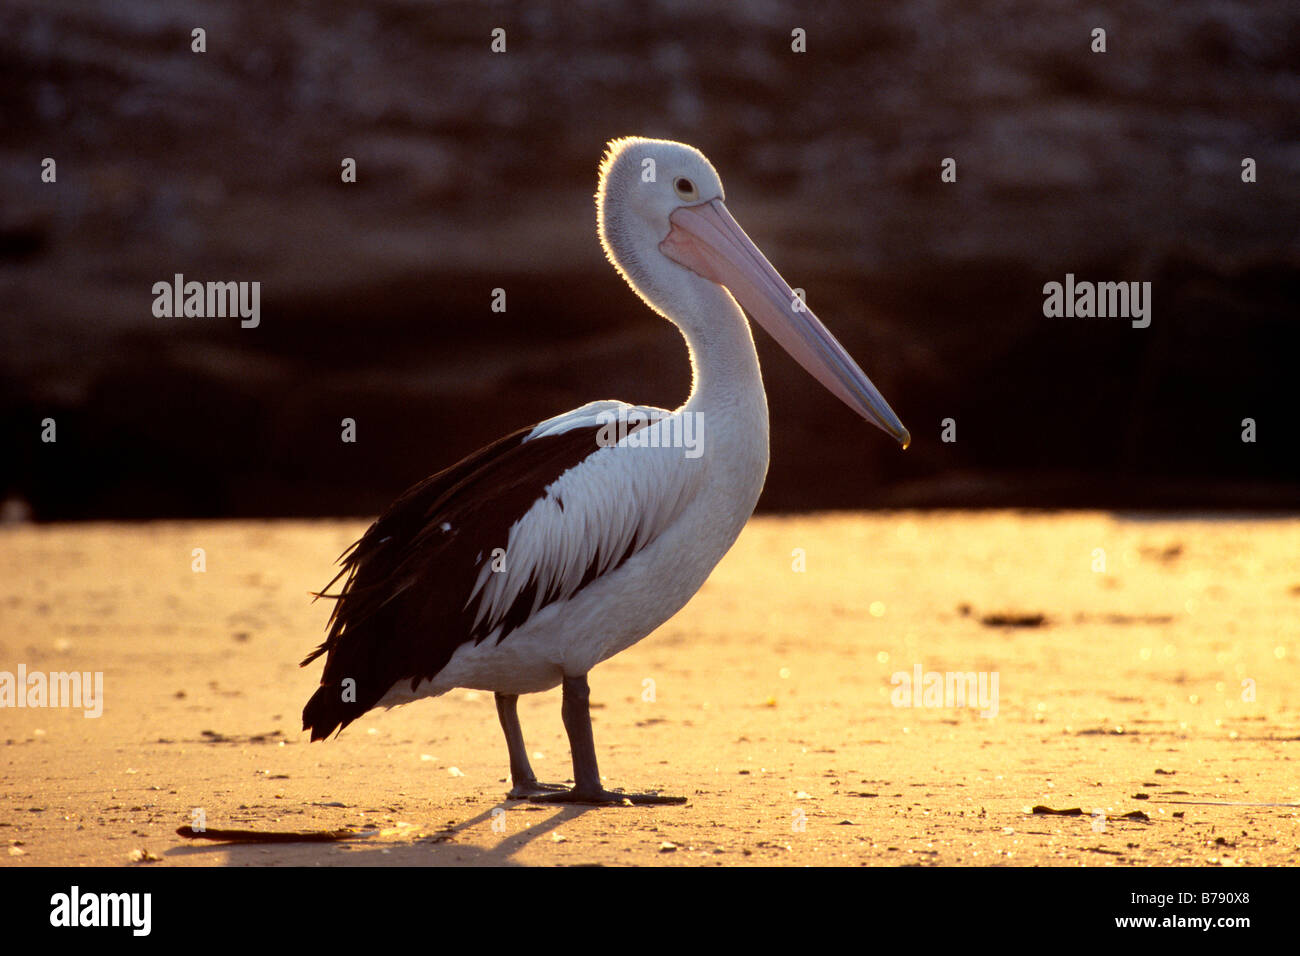 Australian pelican (Pelecanus conspillatus) en contre-jour, Bundjalung National Park, New South Wales, Australie Banque D'Images